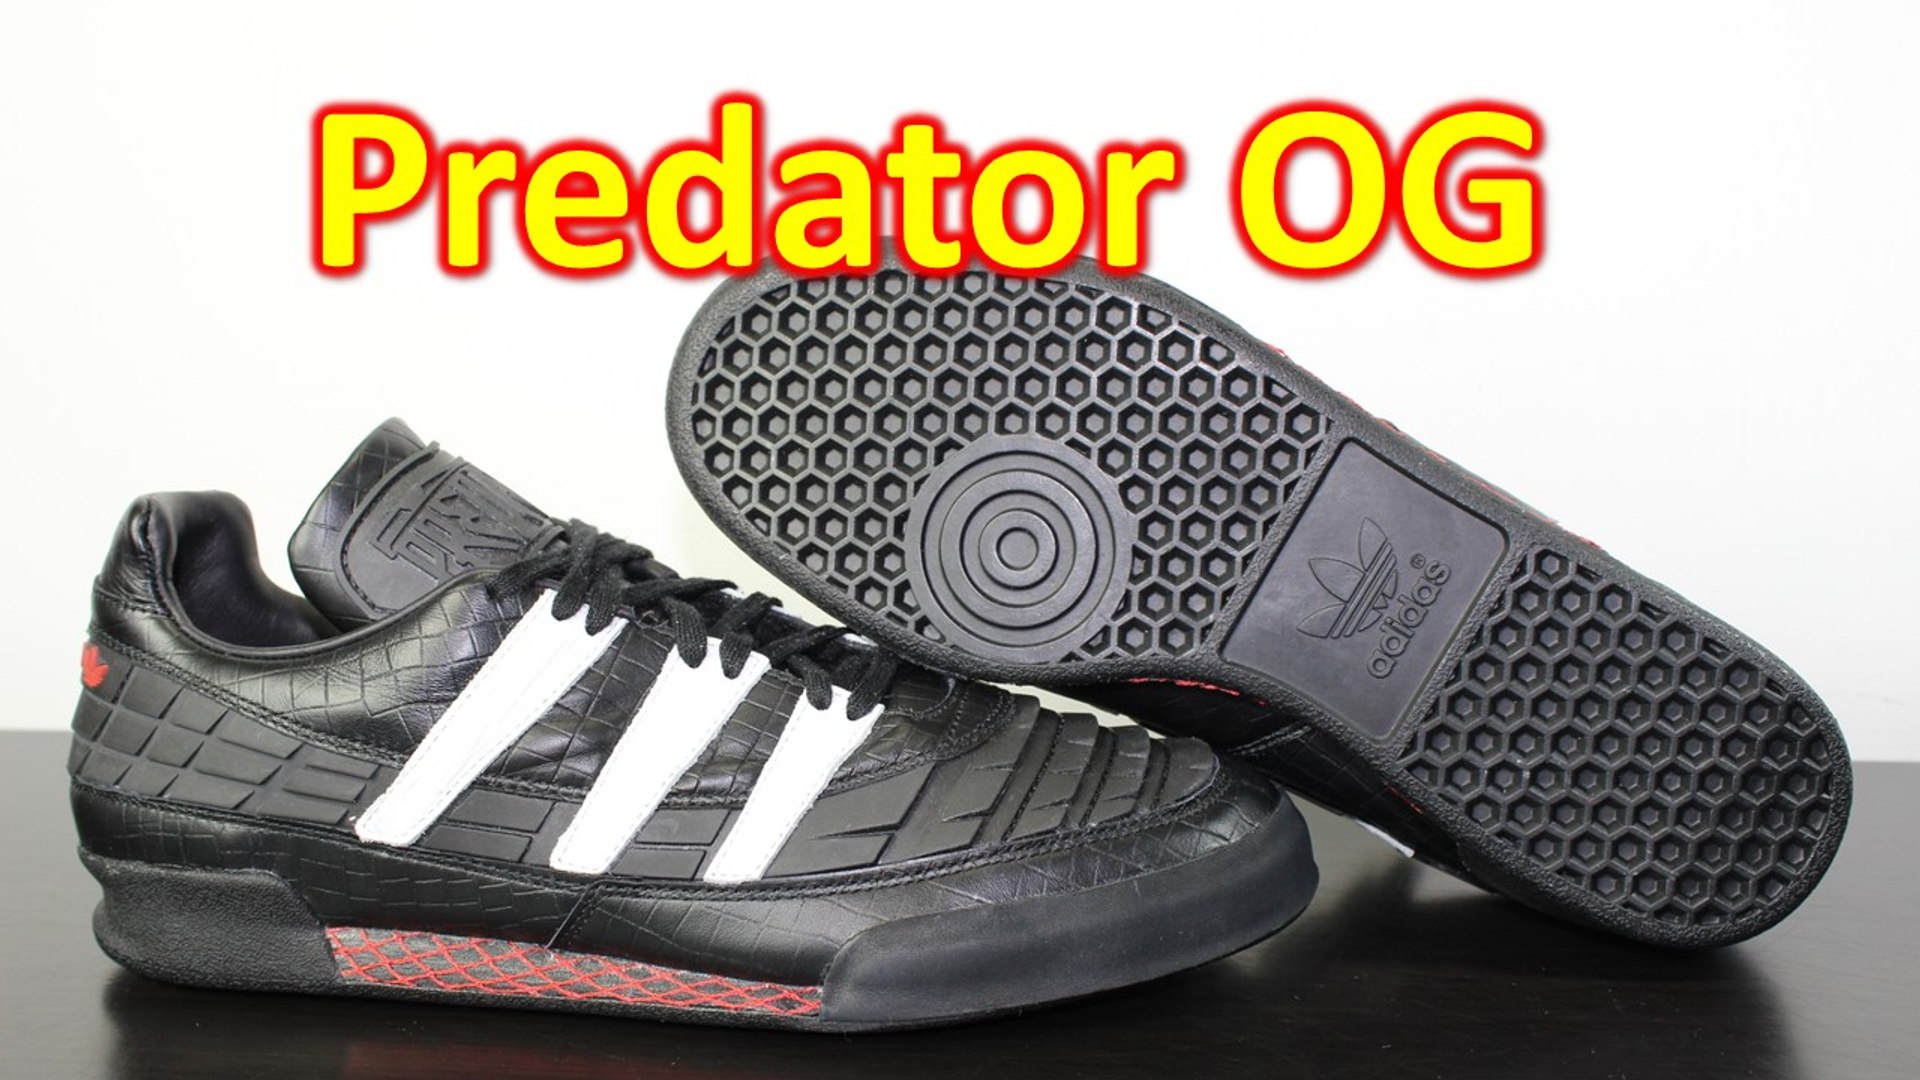 adidas og predator